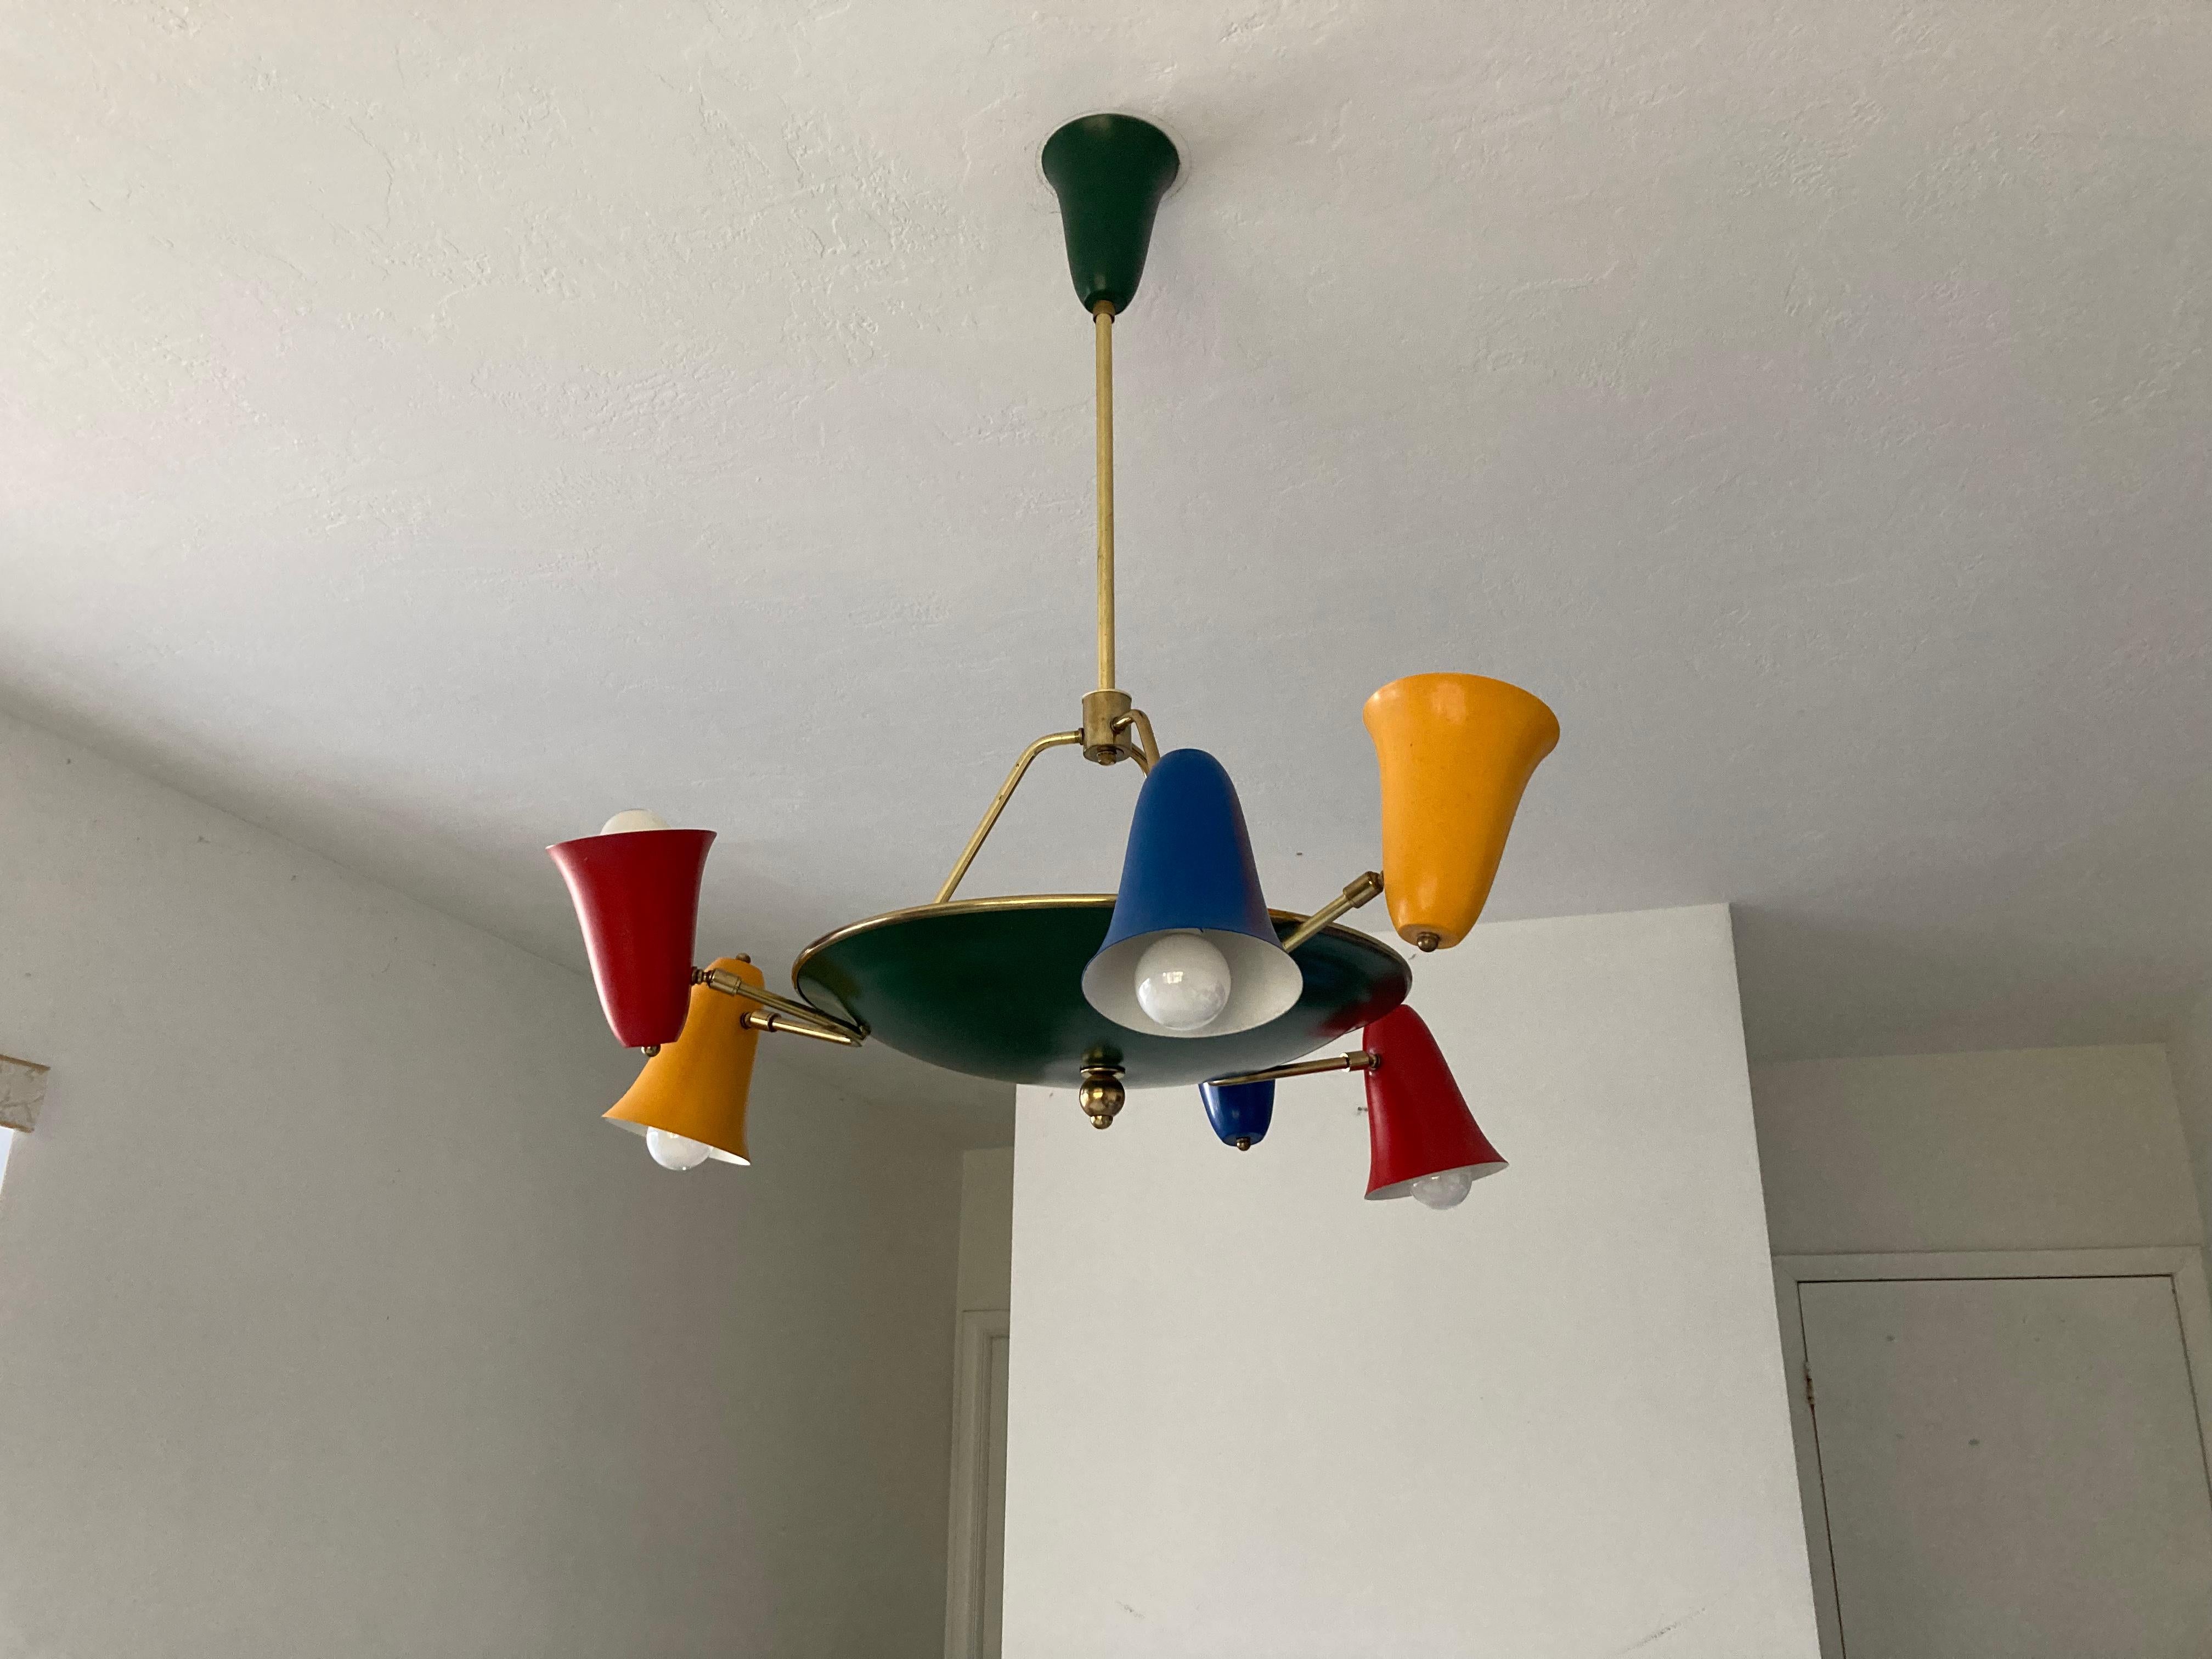 Seltener italienischer Kronleuchter aus den 1950er Jahren, sechs Lampenschirme, die sich um 360 Grad drehen lassen. Ausführung in Messing, rot, grün, gelb und blau. Der Kronleuchter hat einen Durchmesser von 30